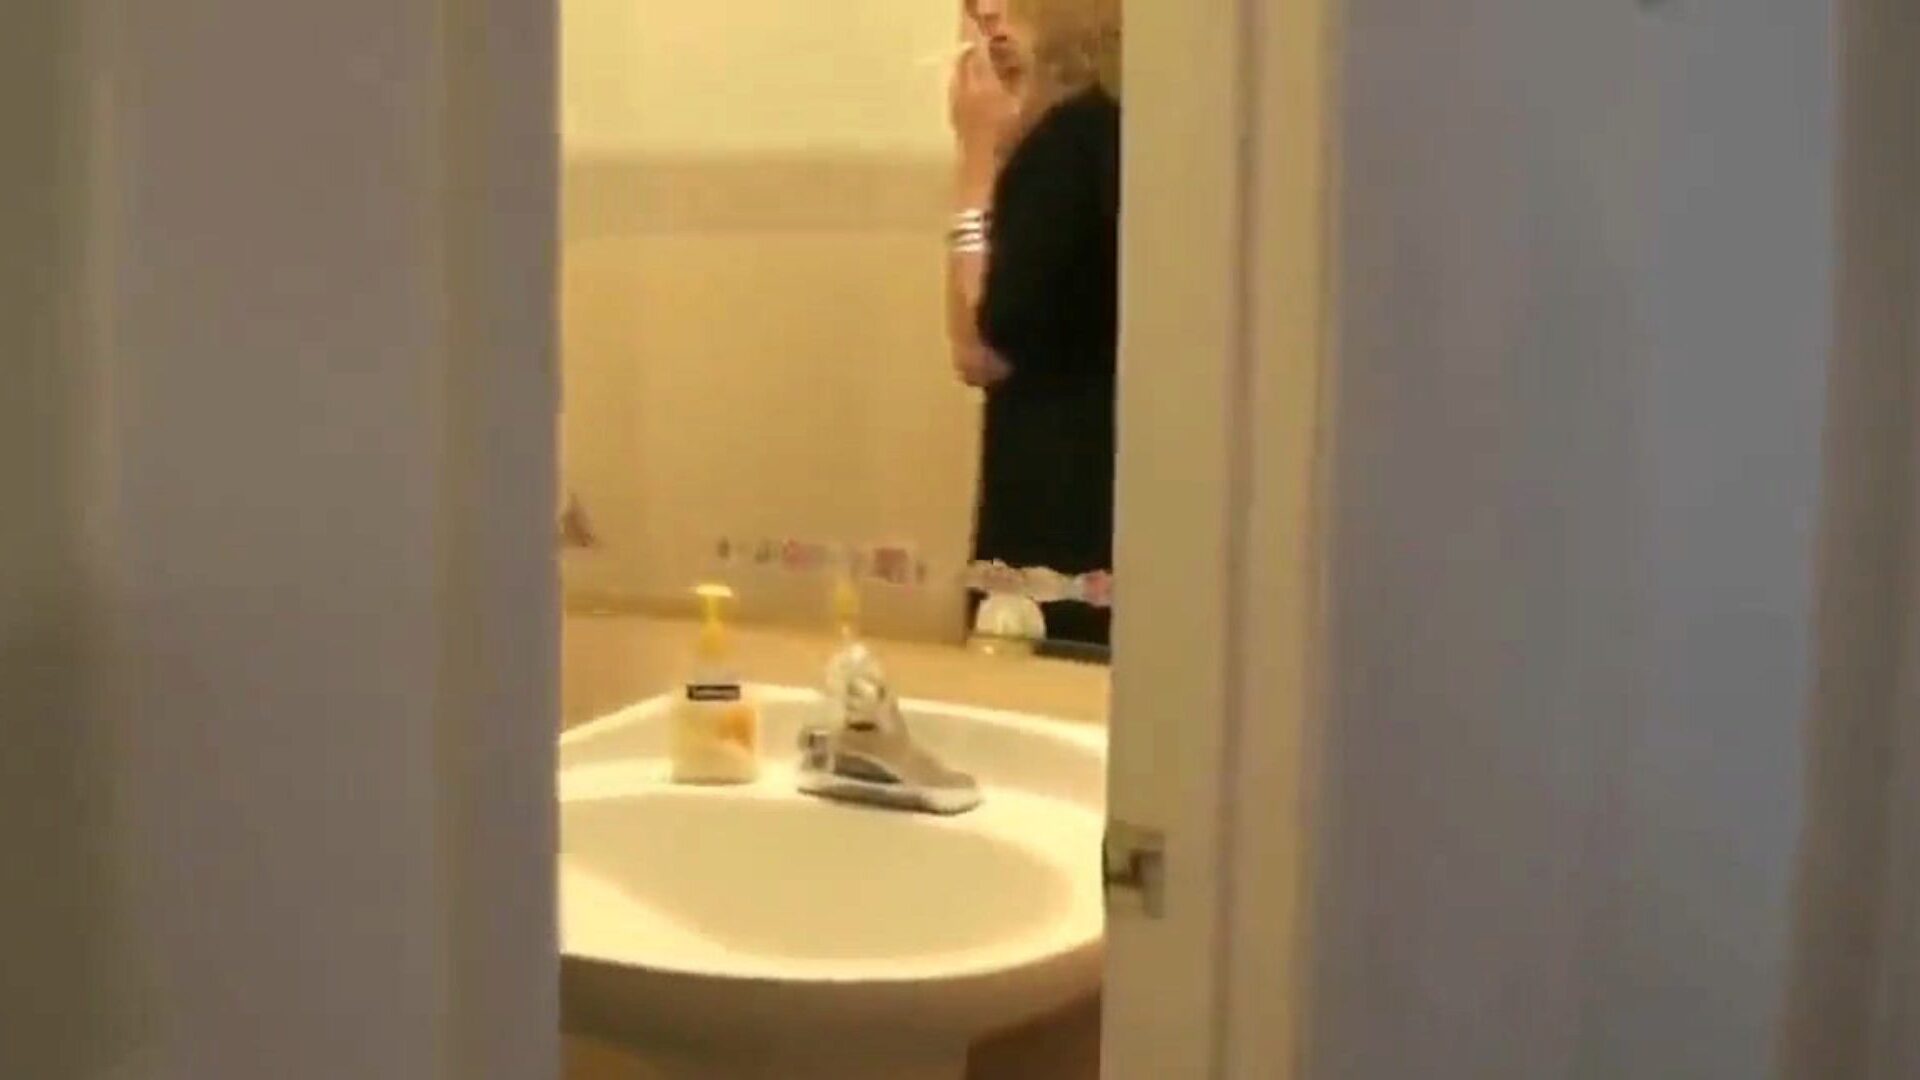 maman fumante surprend son fils en train de l'espionner dans la salle de bain ... regarder maman fumante surprend son fils en train de l'espionner dans la salle de bain épisode de jeu de rôle sur xhamster - la foule ultime de maman xxx gratuite gratuit et gratuit maman mobile hd pornographie tube clips